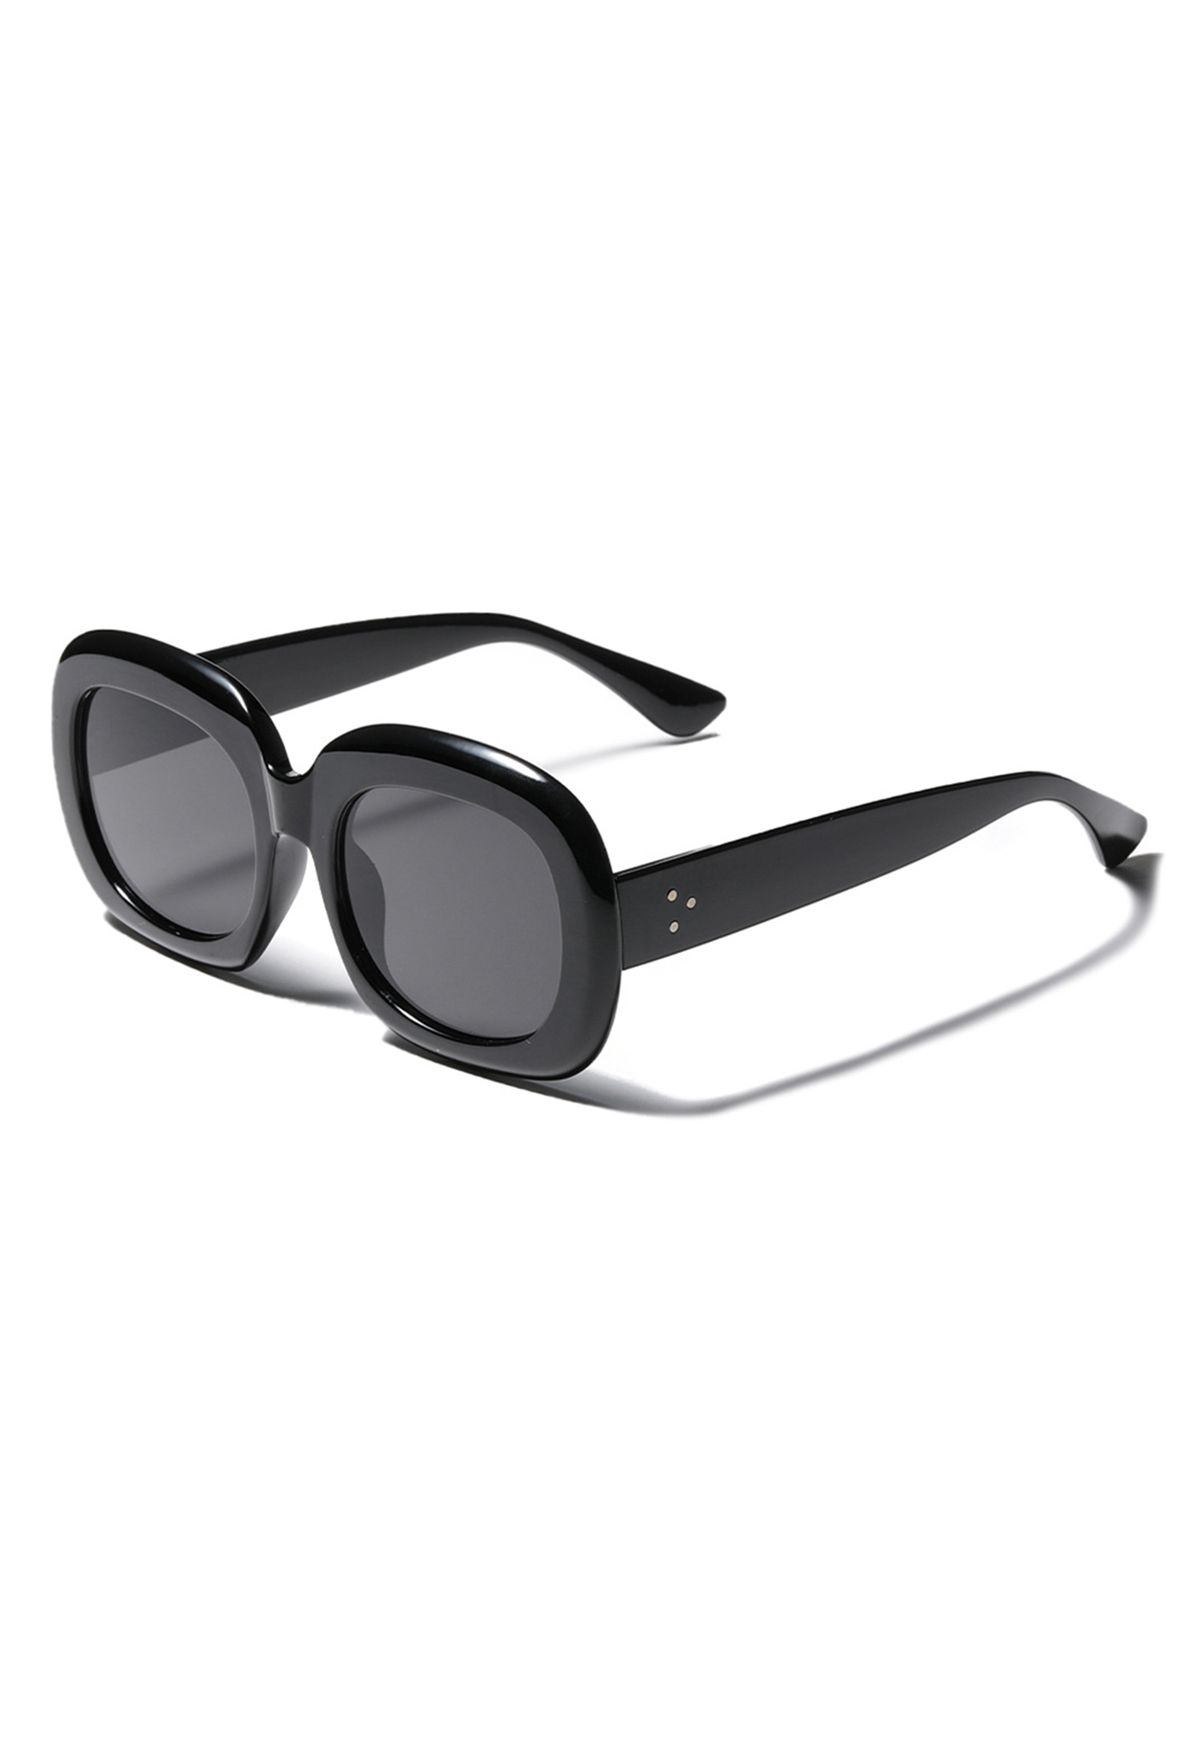 نظارة شمسية أنيقة سوداء كاملة الحواف